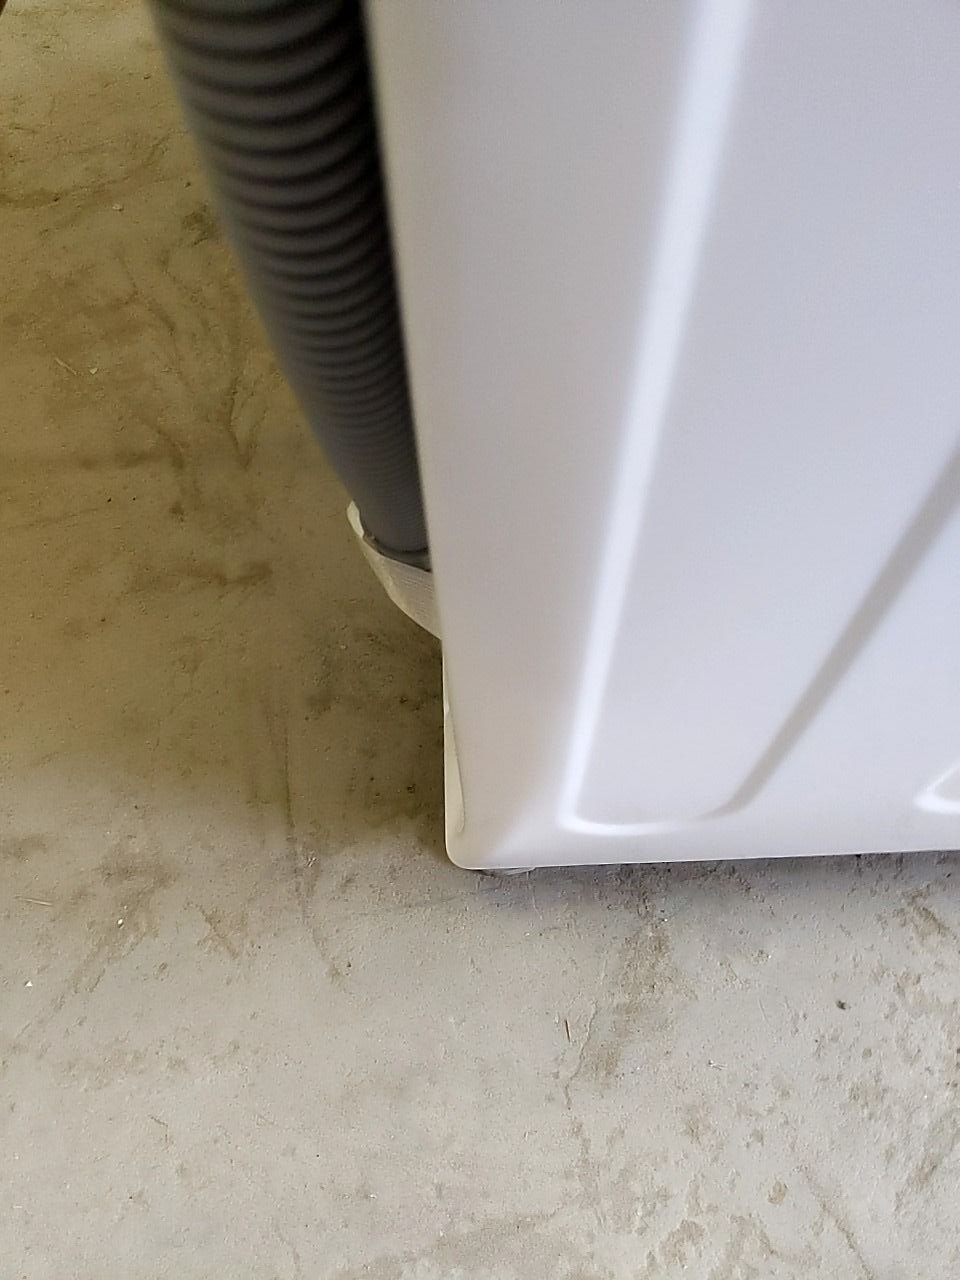 Pračka/sušička LG F4 Turbo9